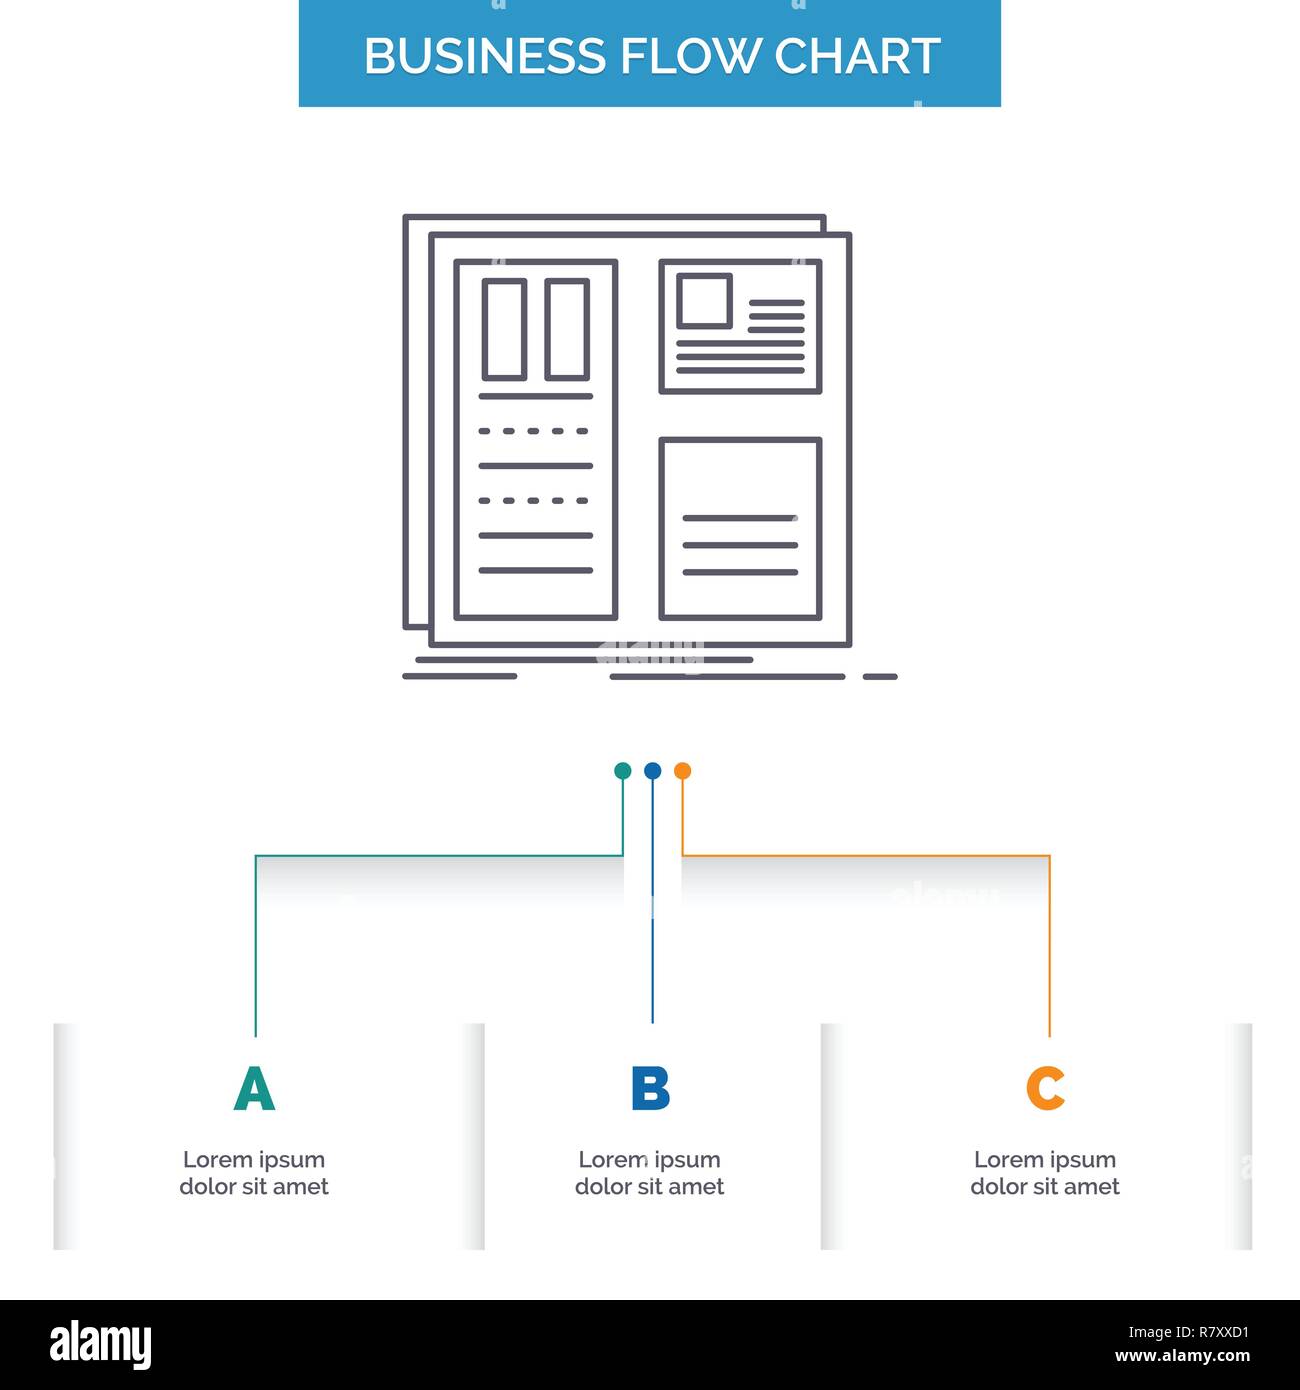 Flow Chart Design Template